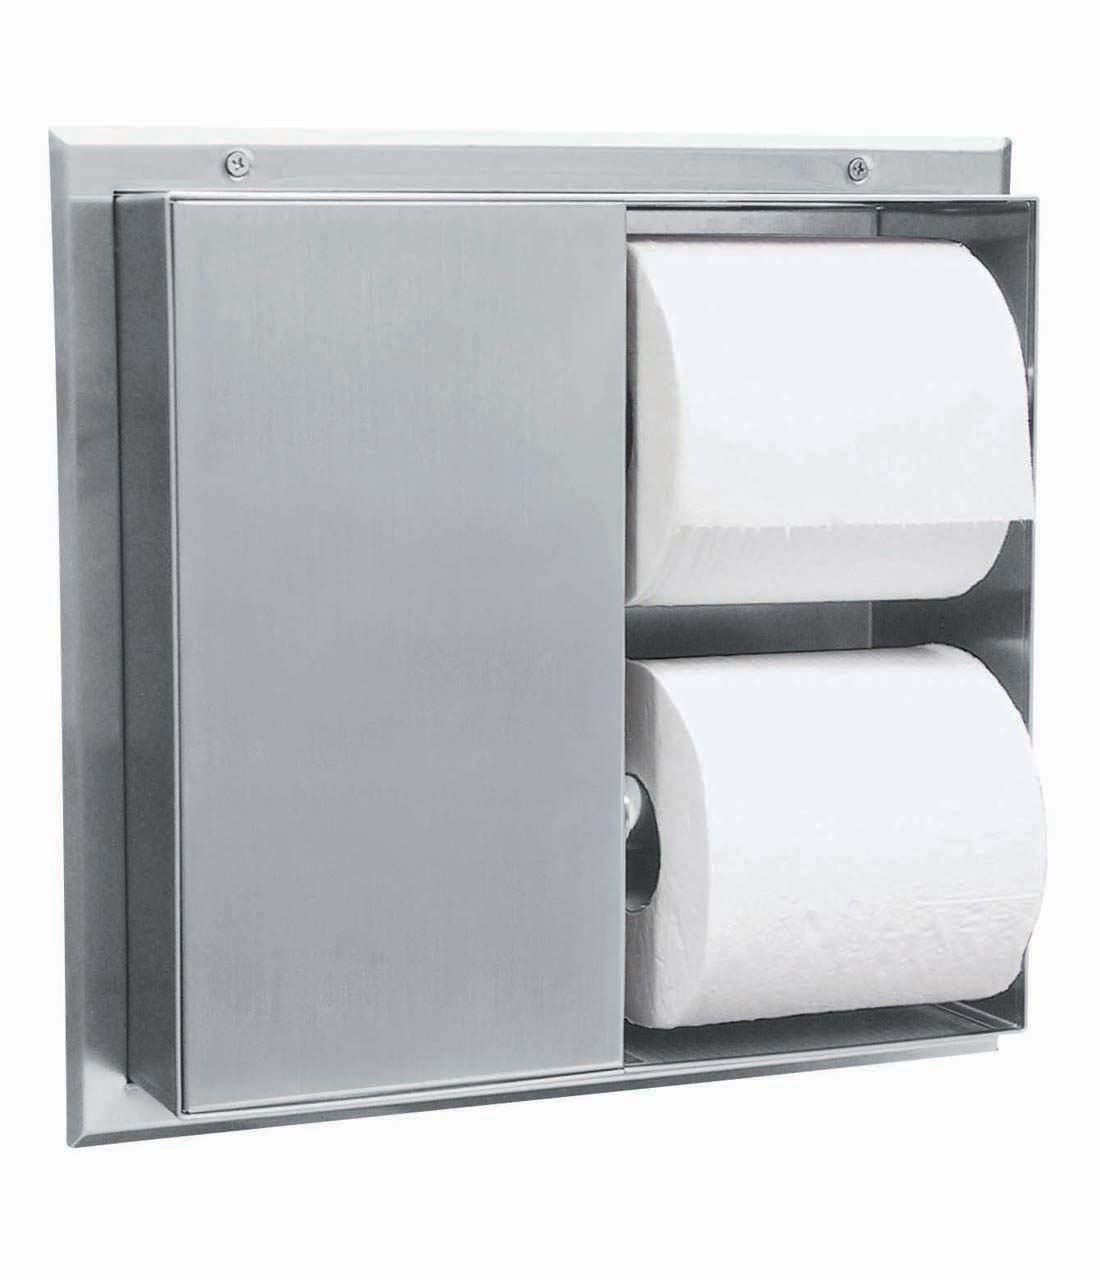 WC-Papierrollenhalter für zwei Rollen zur Trennwandmontage Image